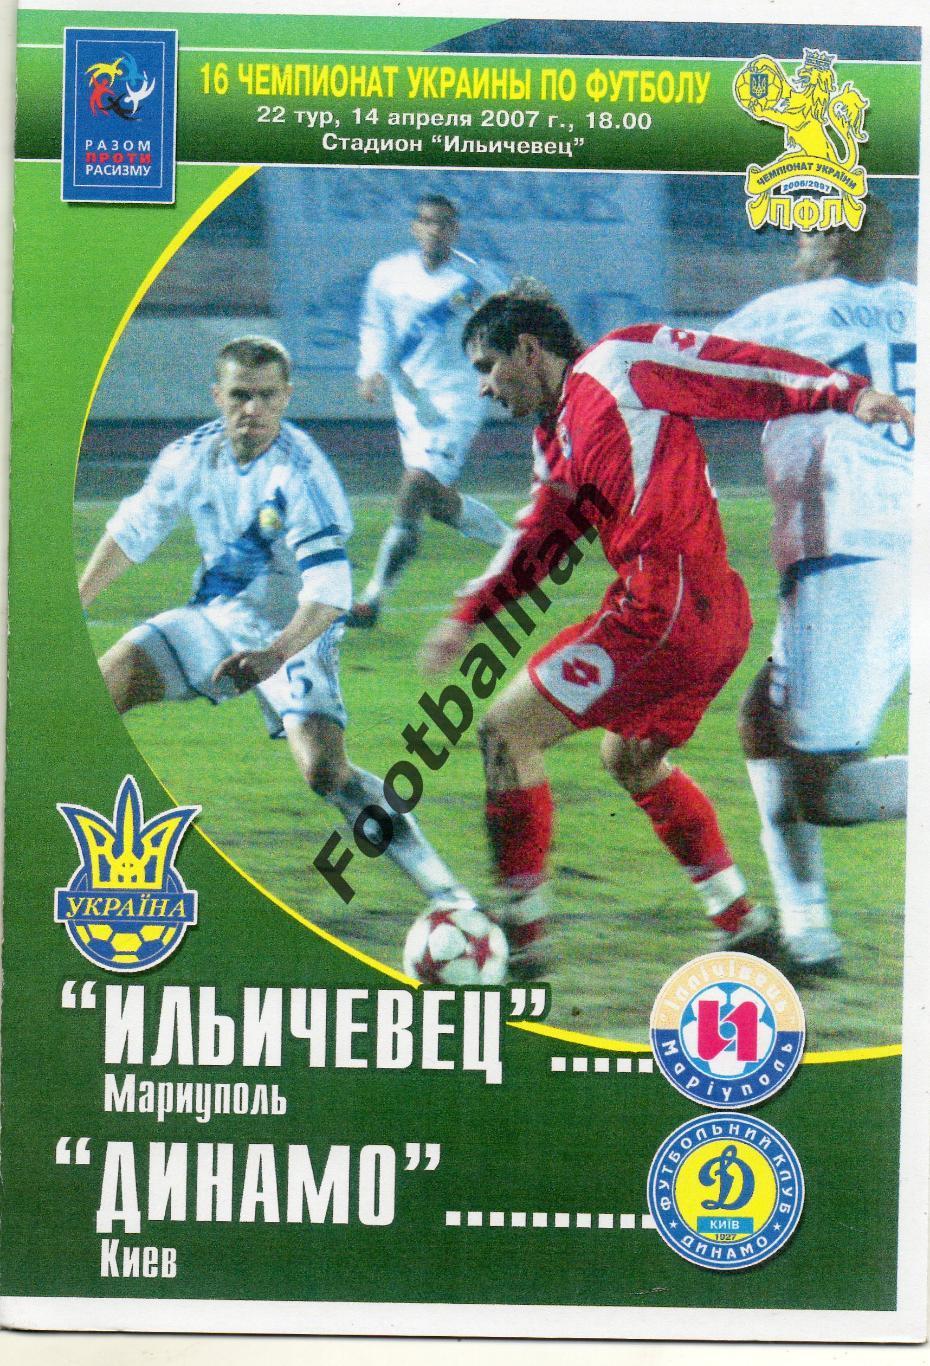 Ильичевец Мариуполь - Динамо Киев 14.04.2007